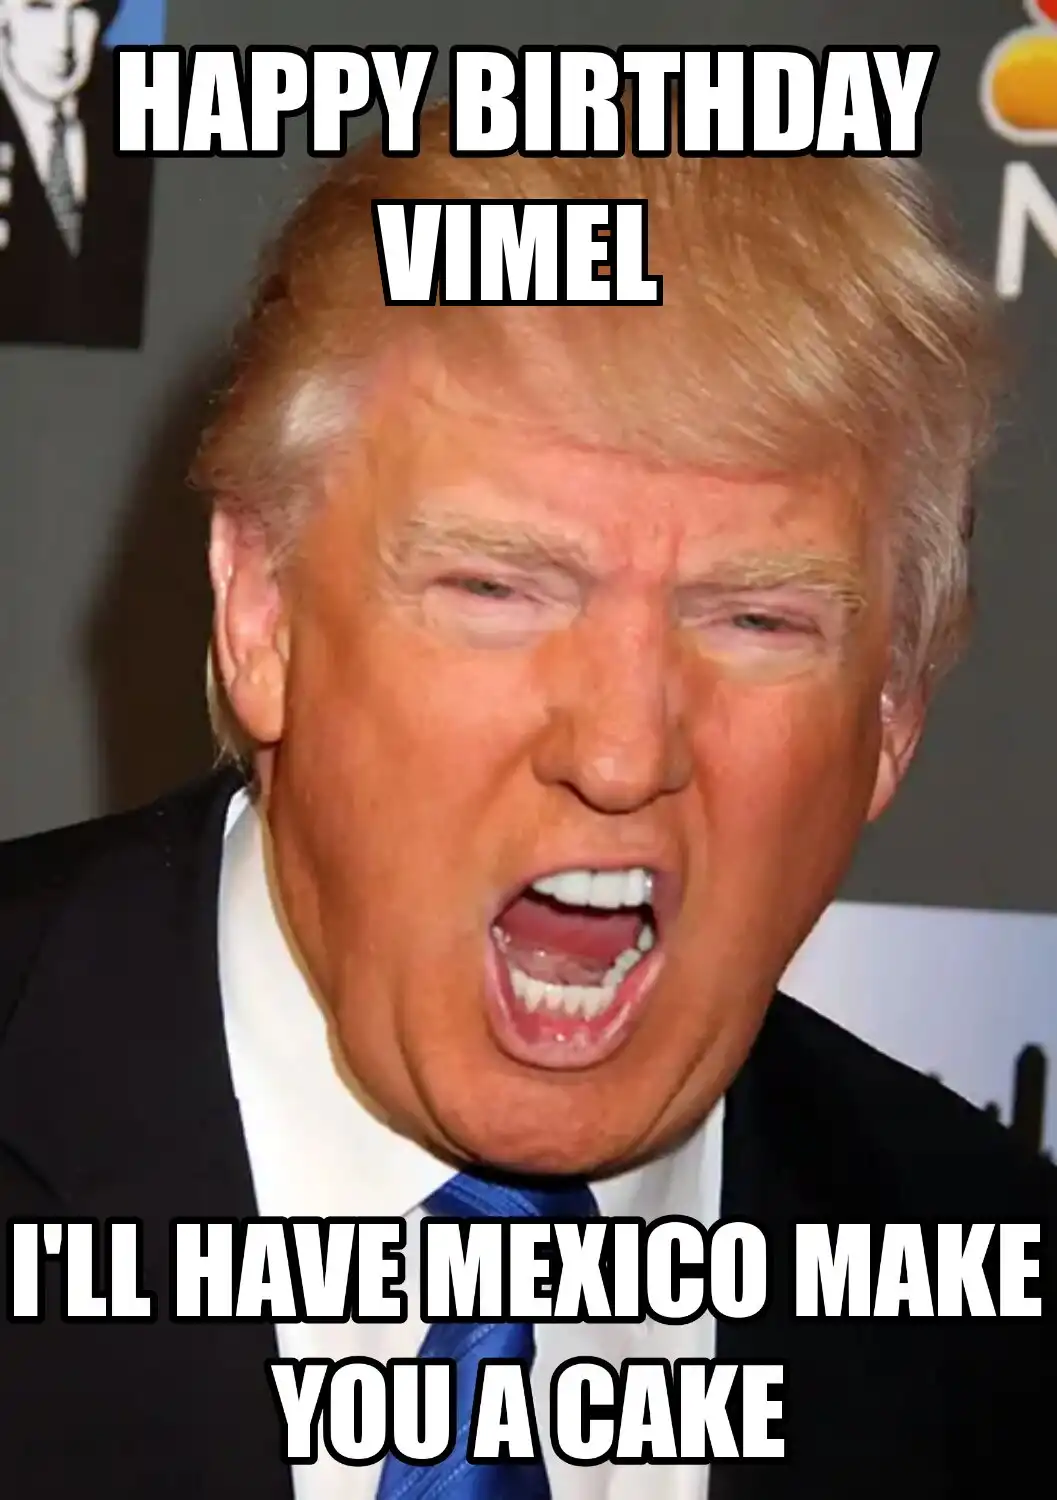 Happy Birthday Vimel Mexico Make You A Cake Meme